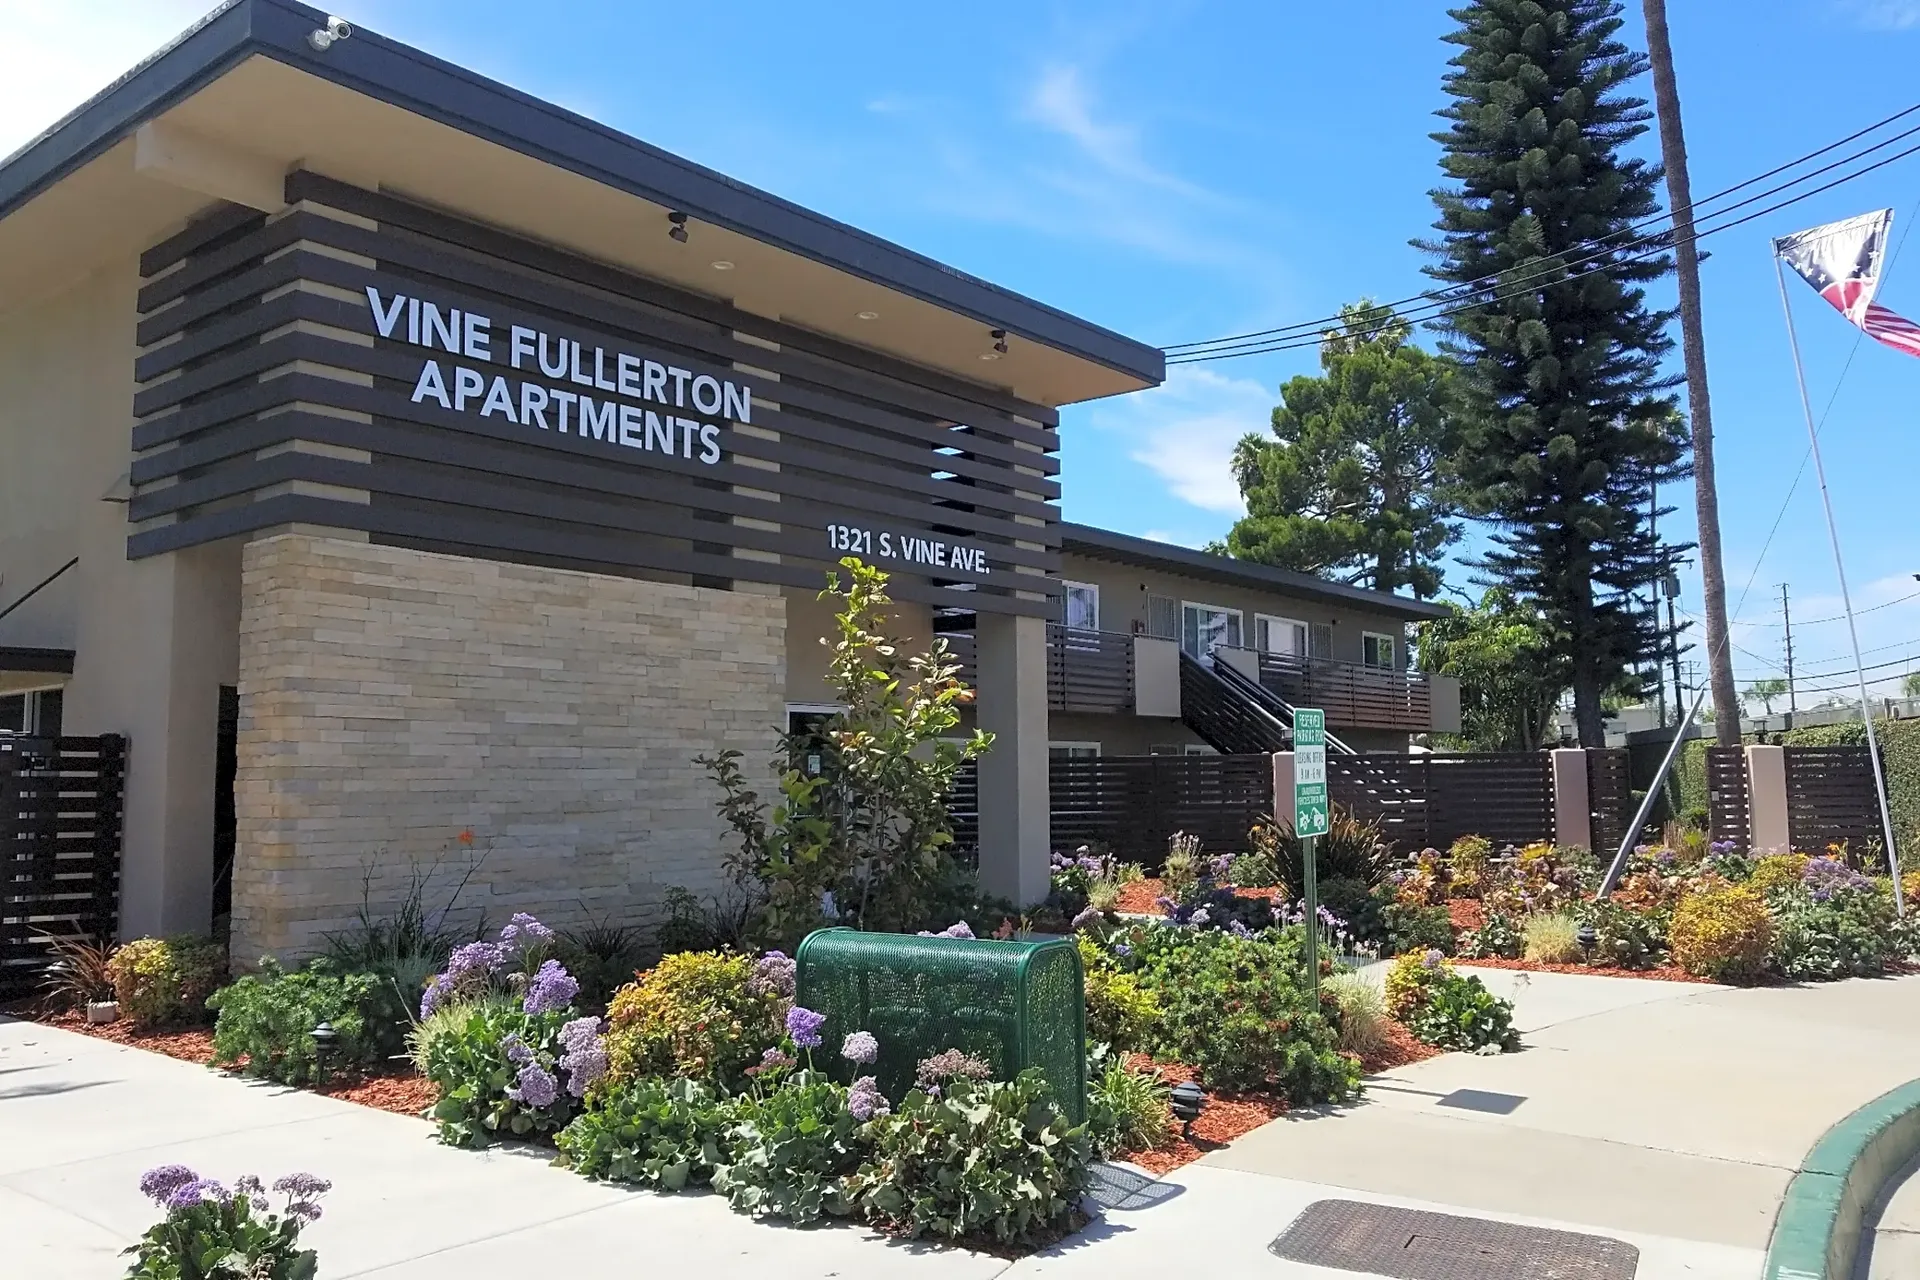 Vine Fullerton Apartments